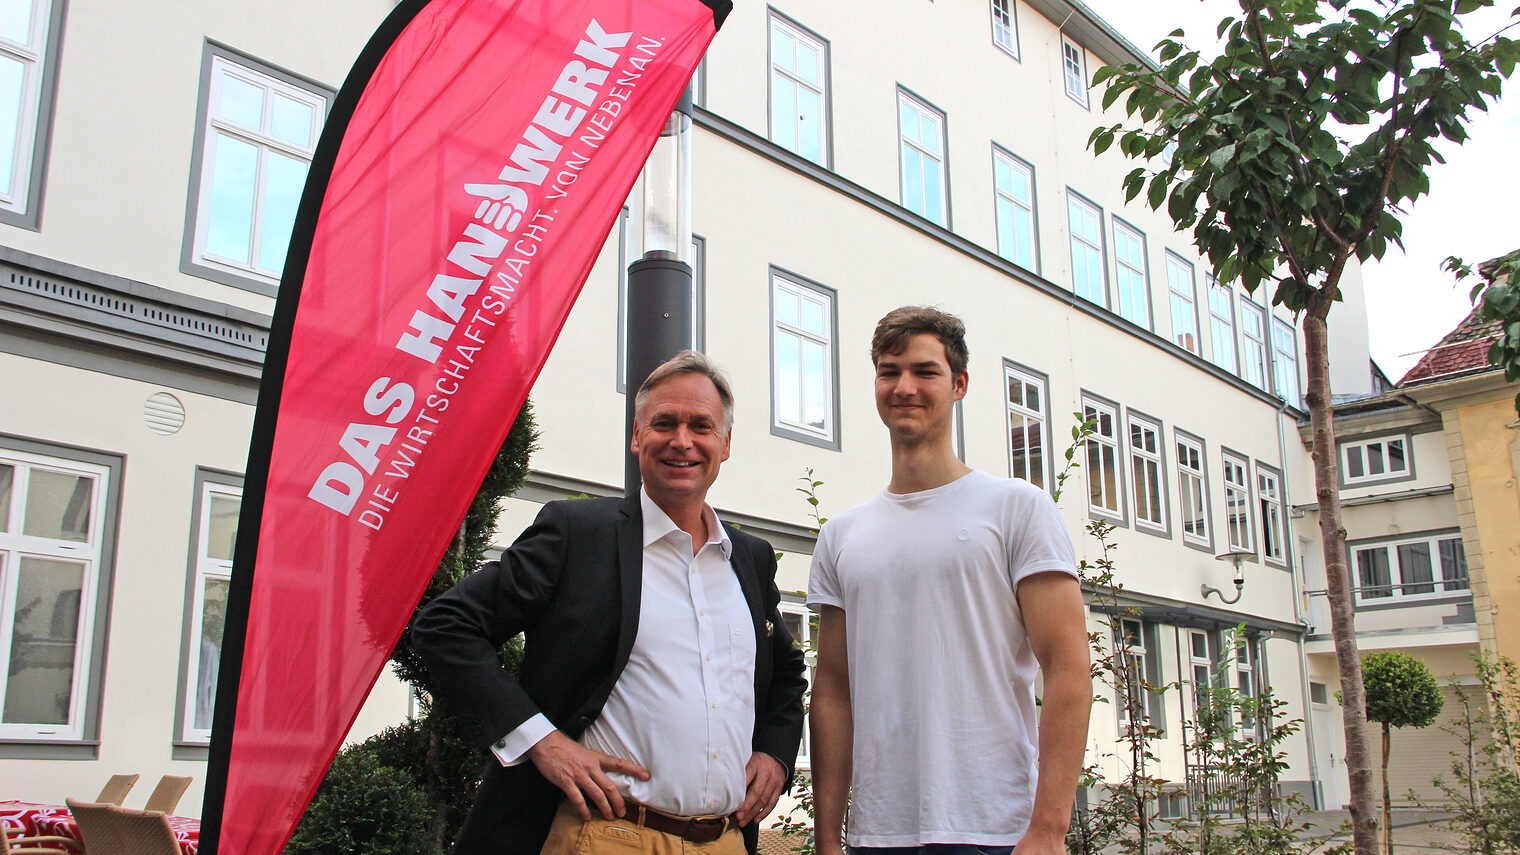 Stefan Lobenstein tauscht sich mit Peter Surber beim Café International über die Auslandserfahrungen des jungen Handwerkers aus.